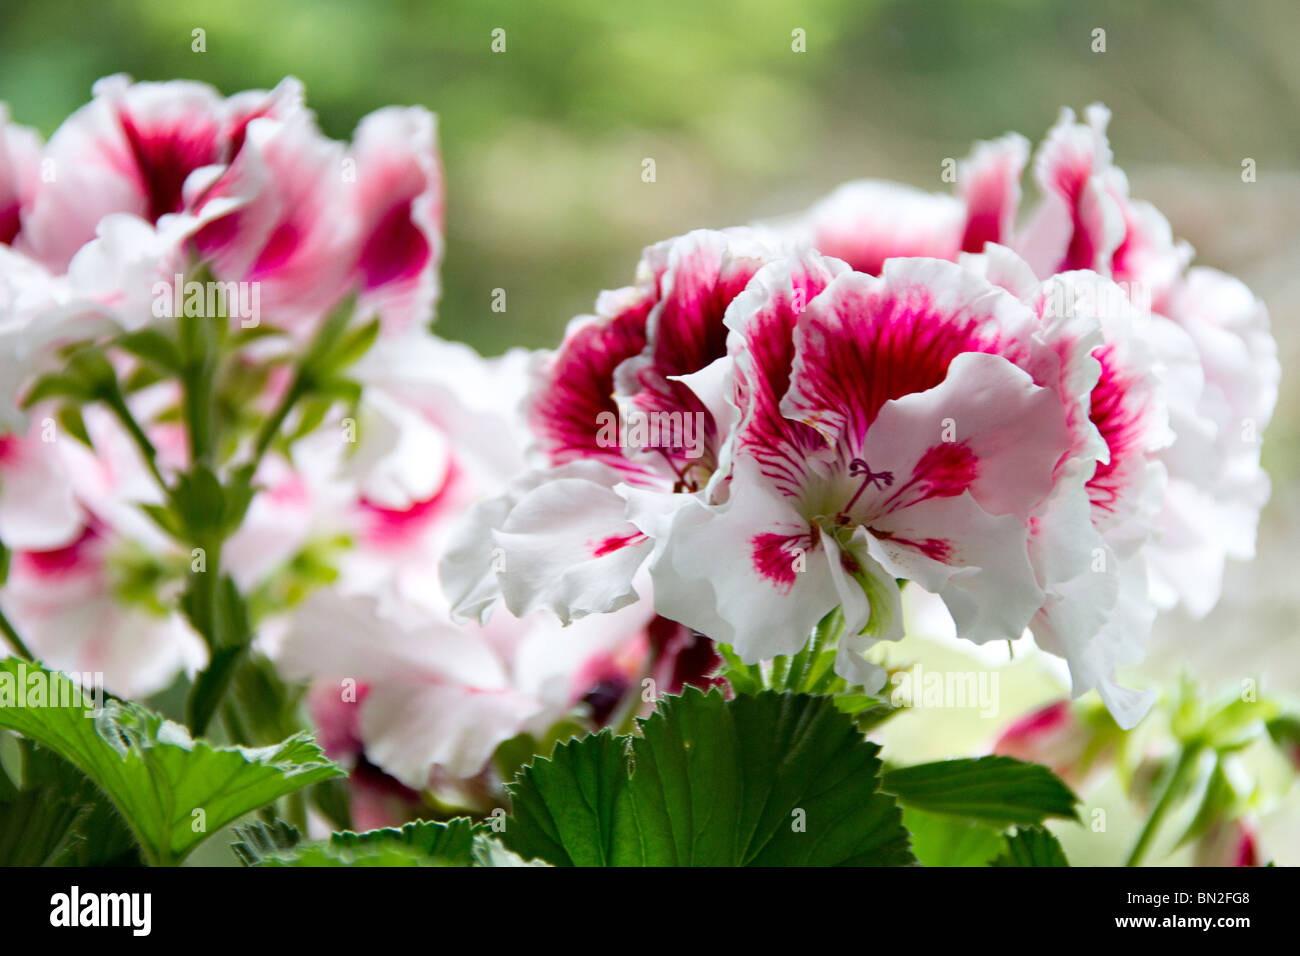 Fleurs roses et blanches de la Gendarmerie royale en fleurs (géraniums) Banque D'Images